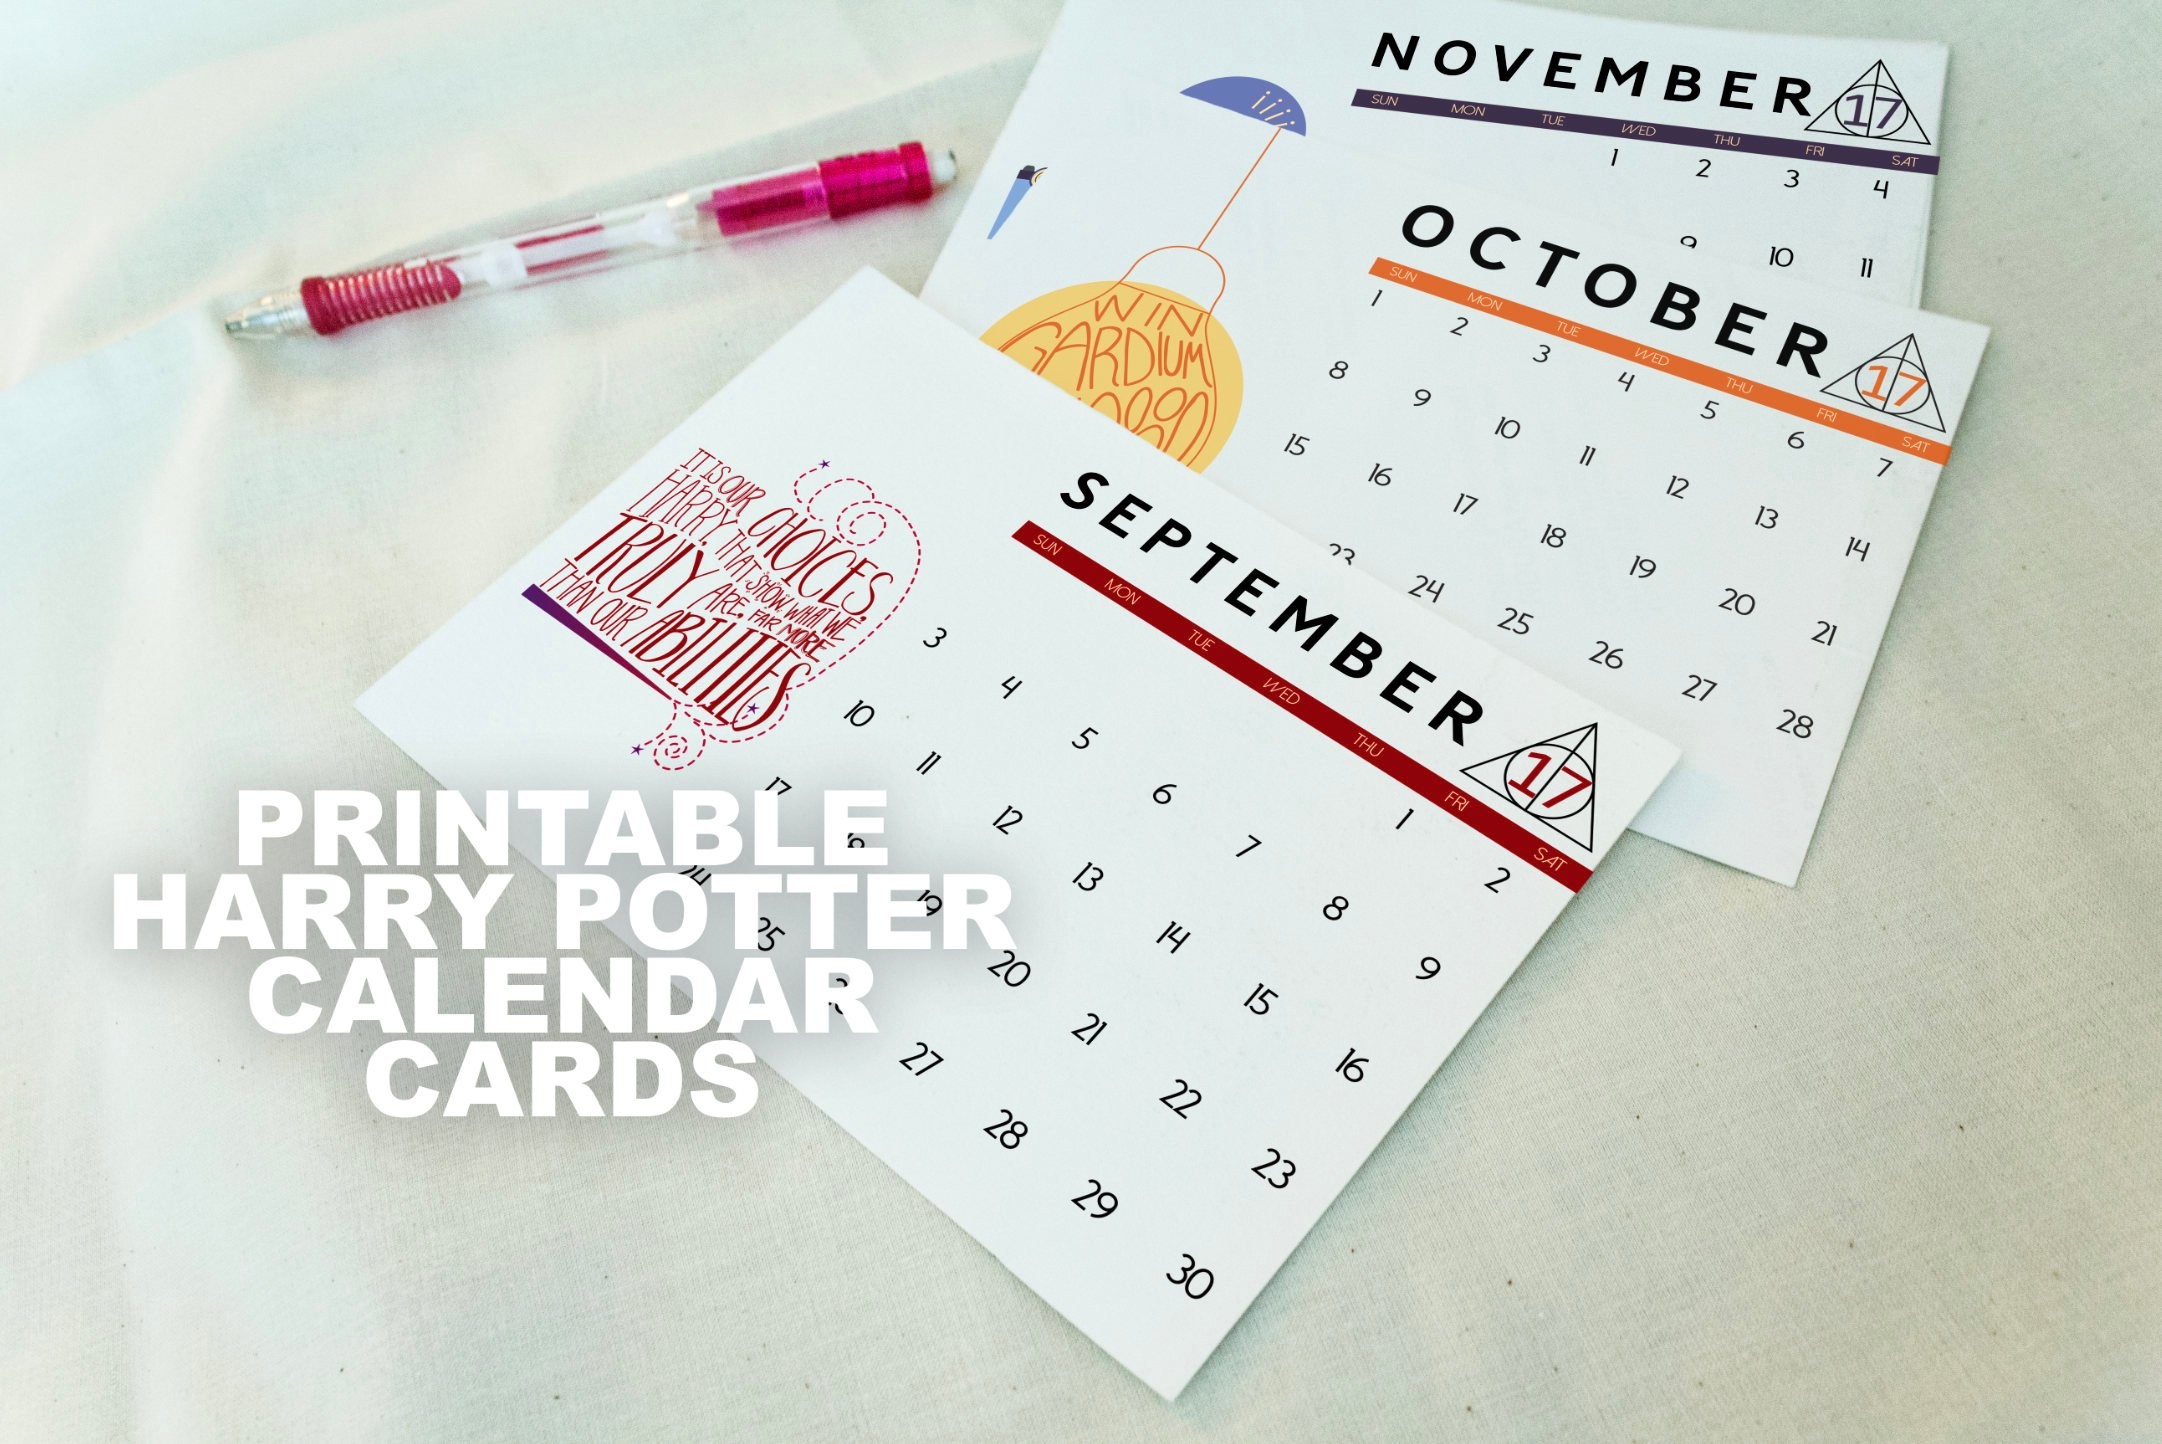 Harry Potter Calendar Cards Printable 2017 2018 Desk